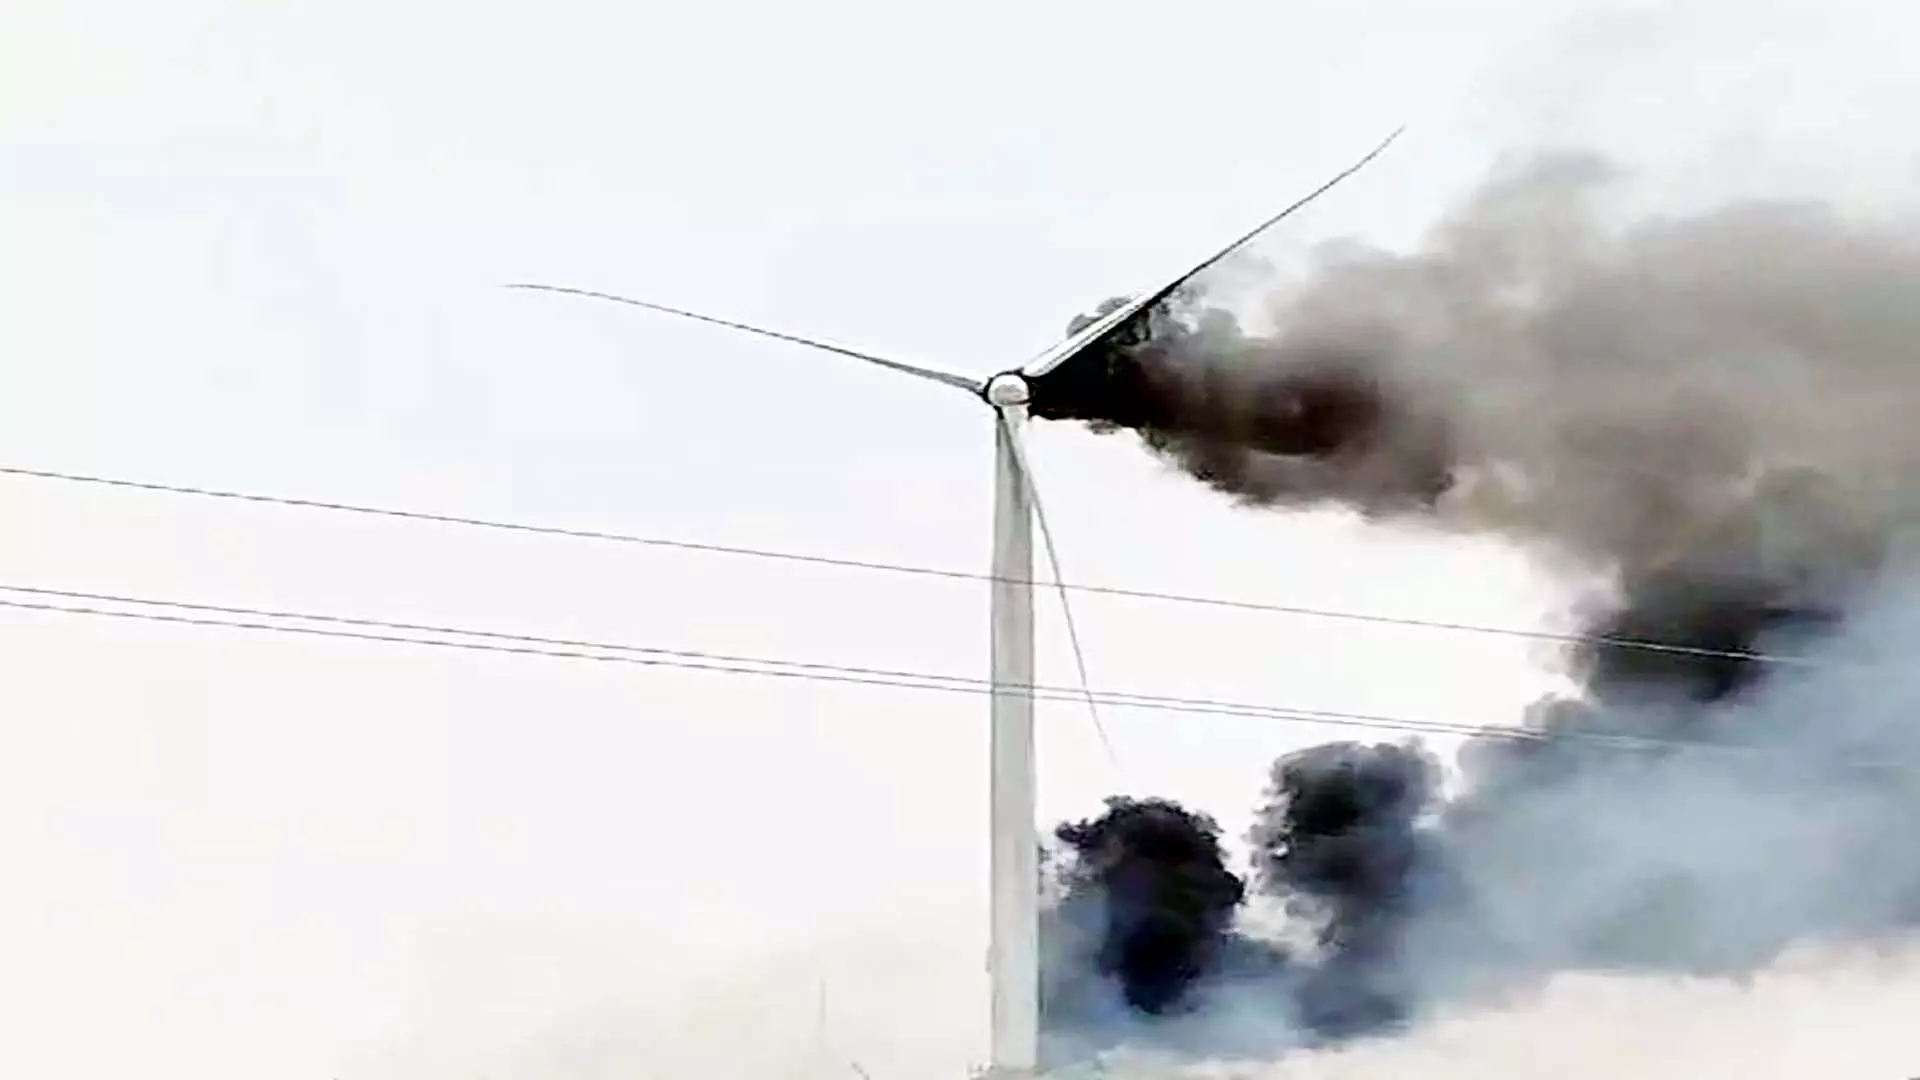 शाजापुर जिले में स्थित पवन चक्की में लगी आग ,लाखों रुपये के नुकसान की आशंका